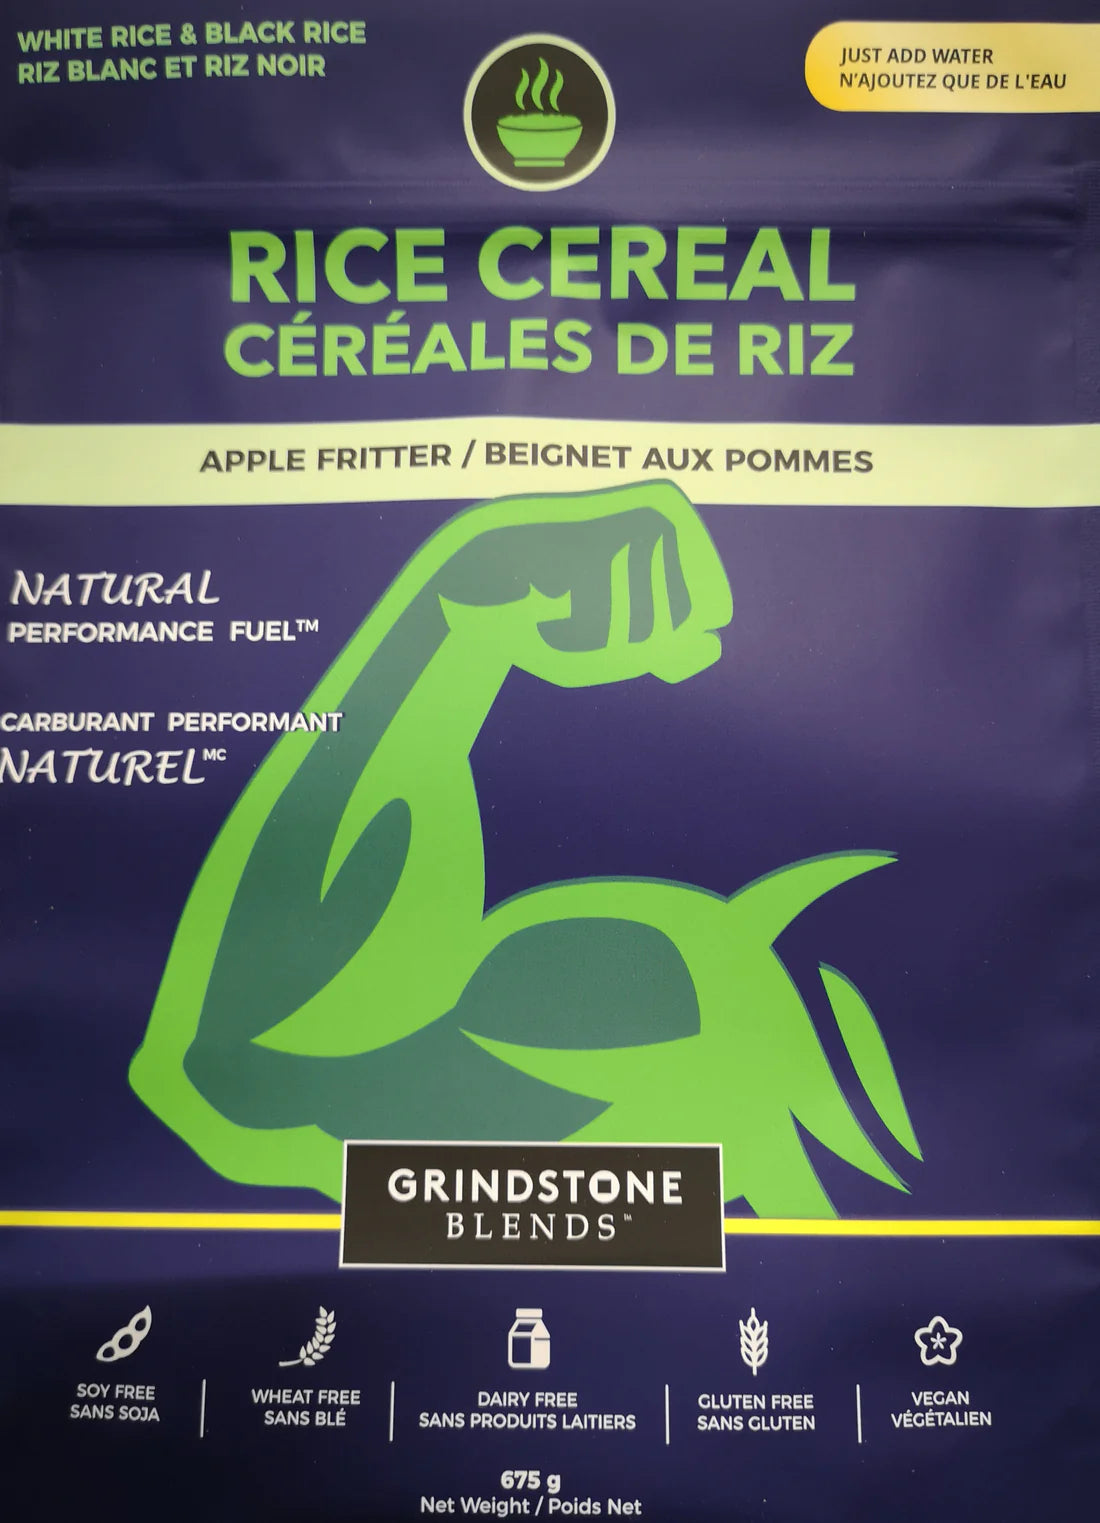 Grindstone Blends Hot Cereal (Blended Black & White Rice Apple Fritter)